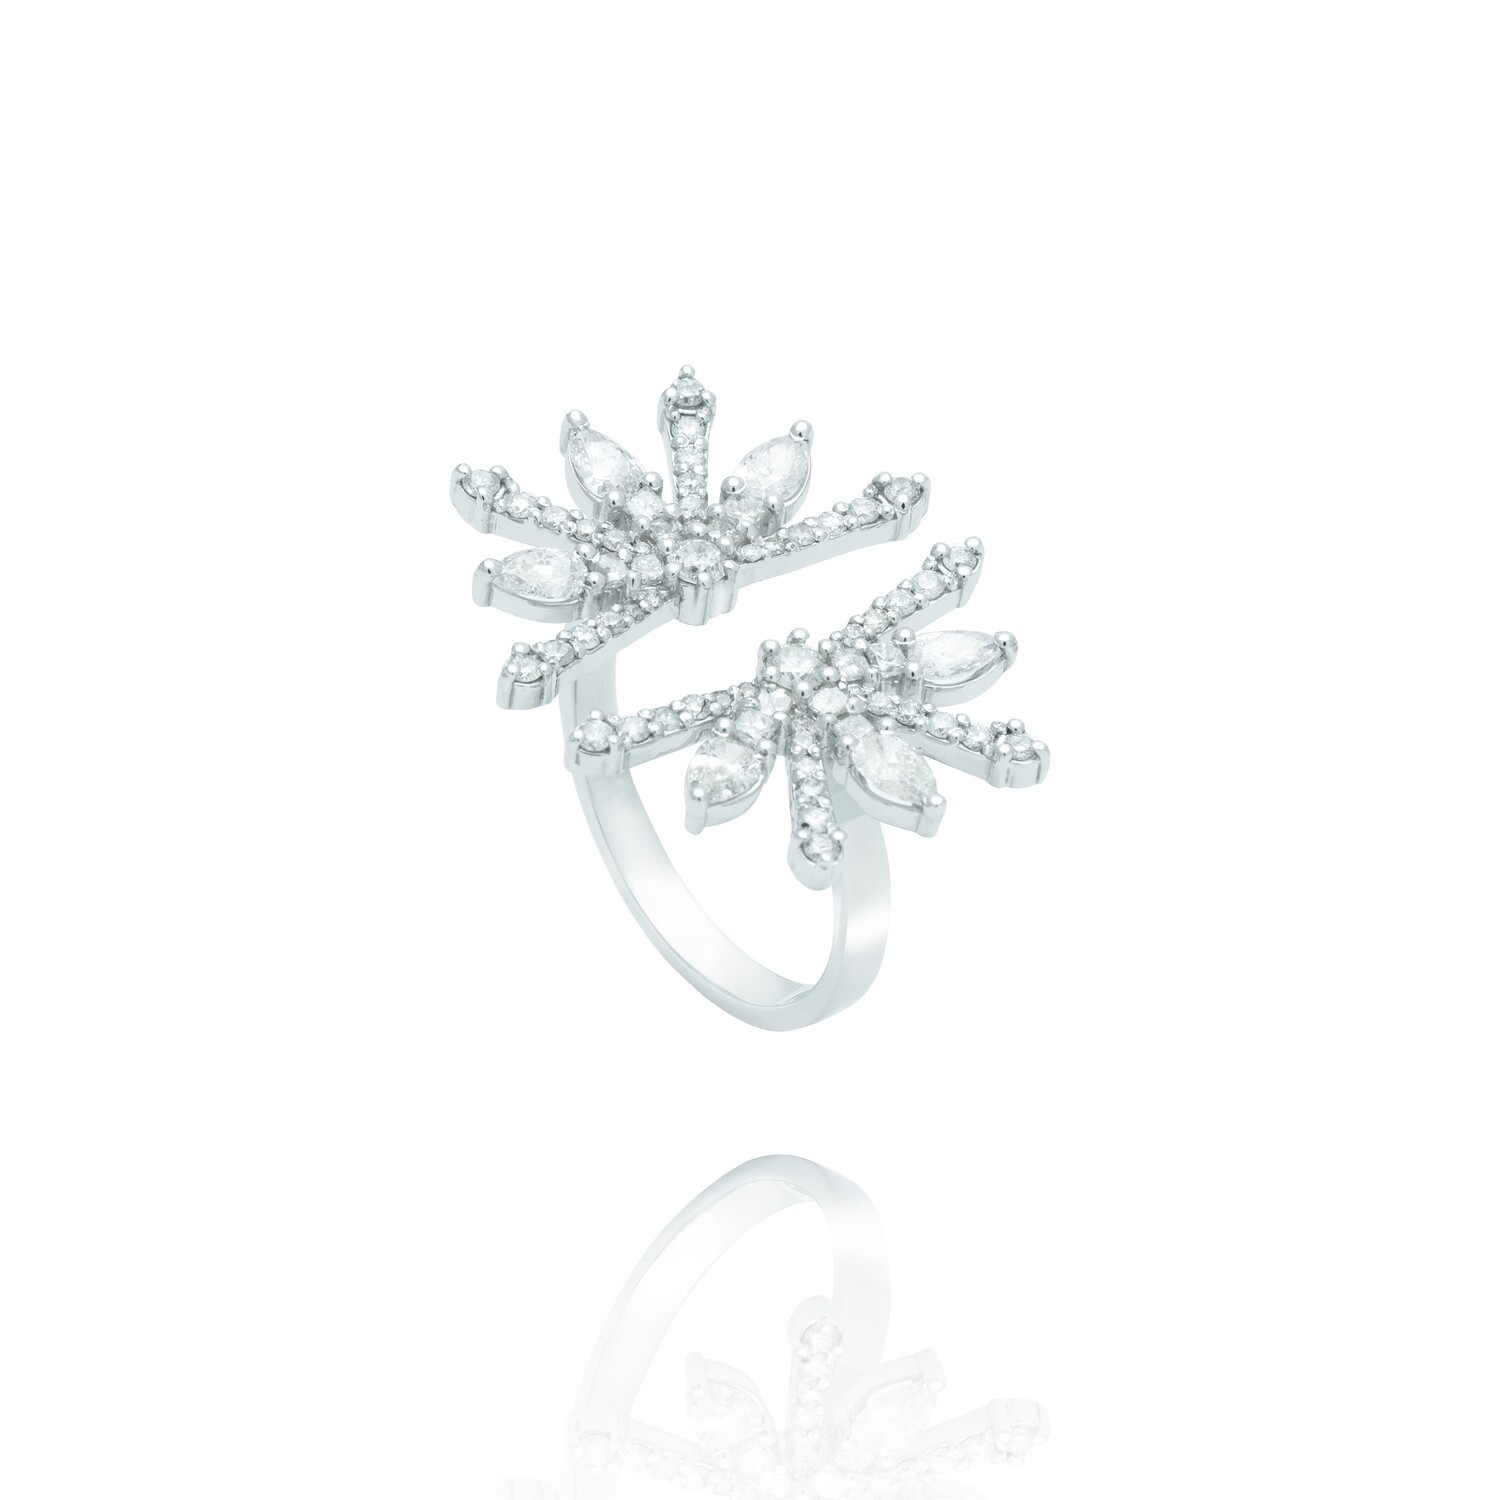 Snowflake Diamond Ring with Pear and Princess Diamond